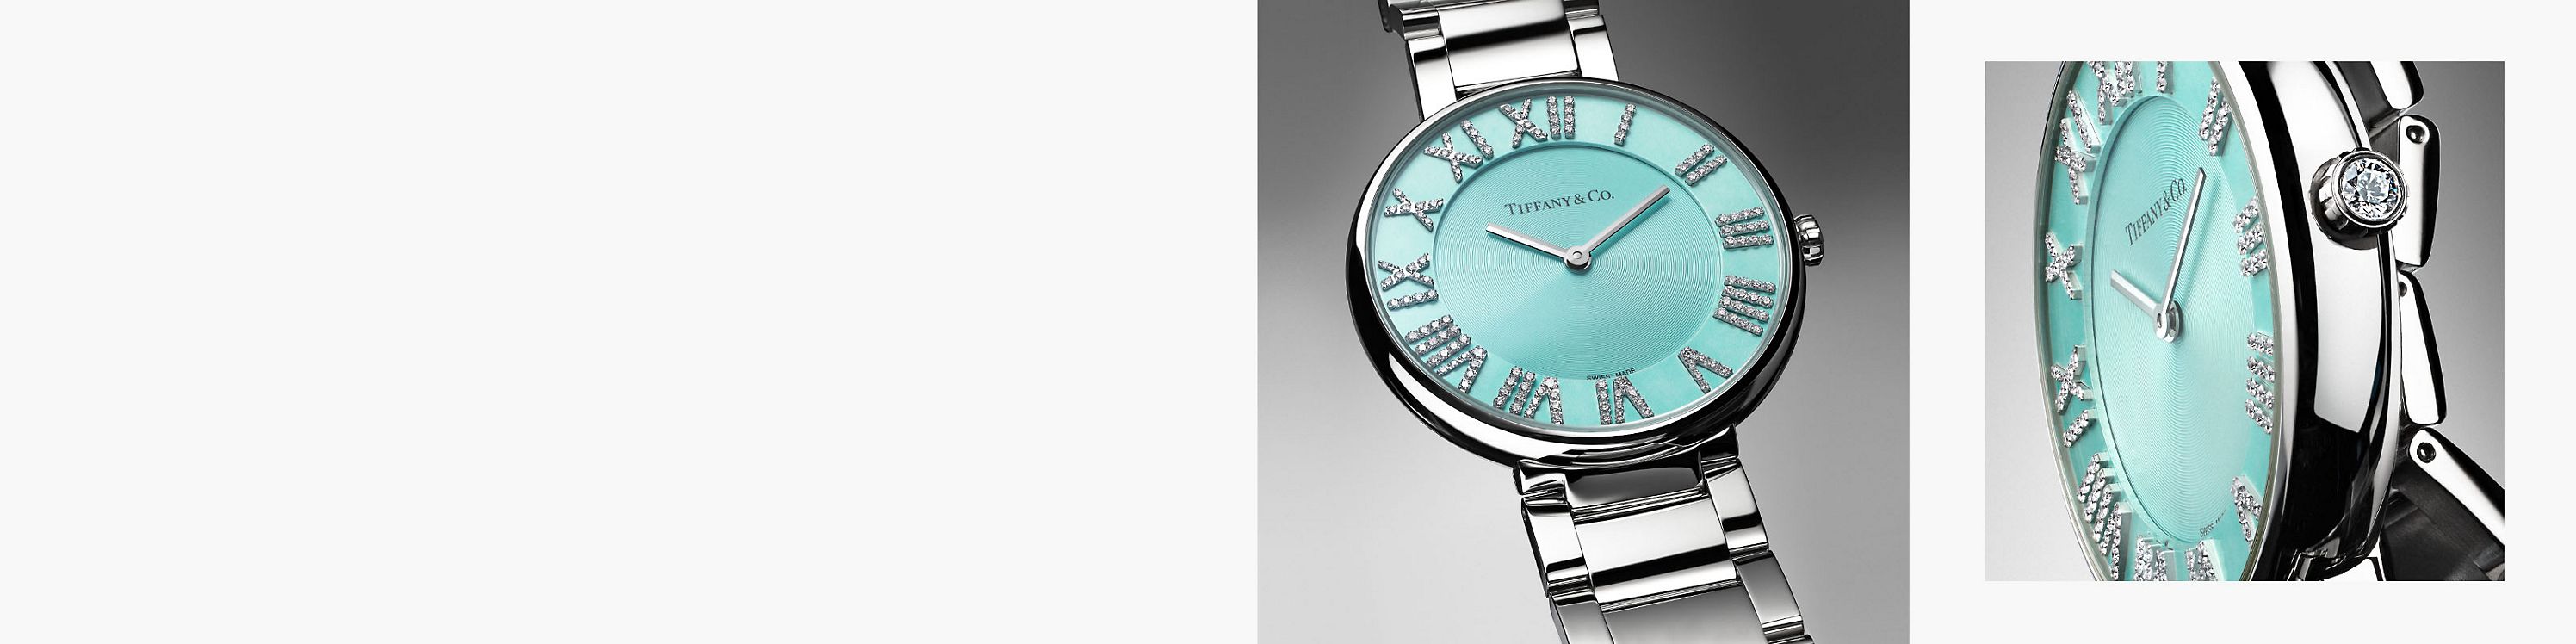 Посмотреть часы Tiffany & Co. Atlas™